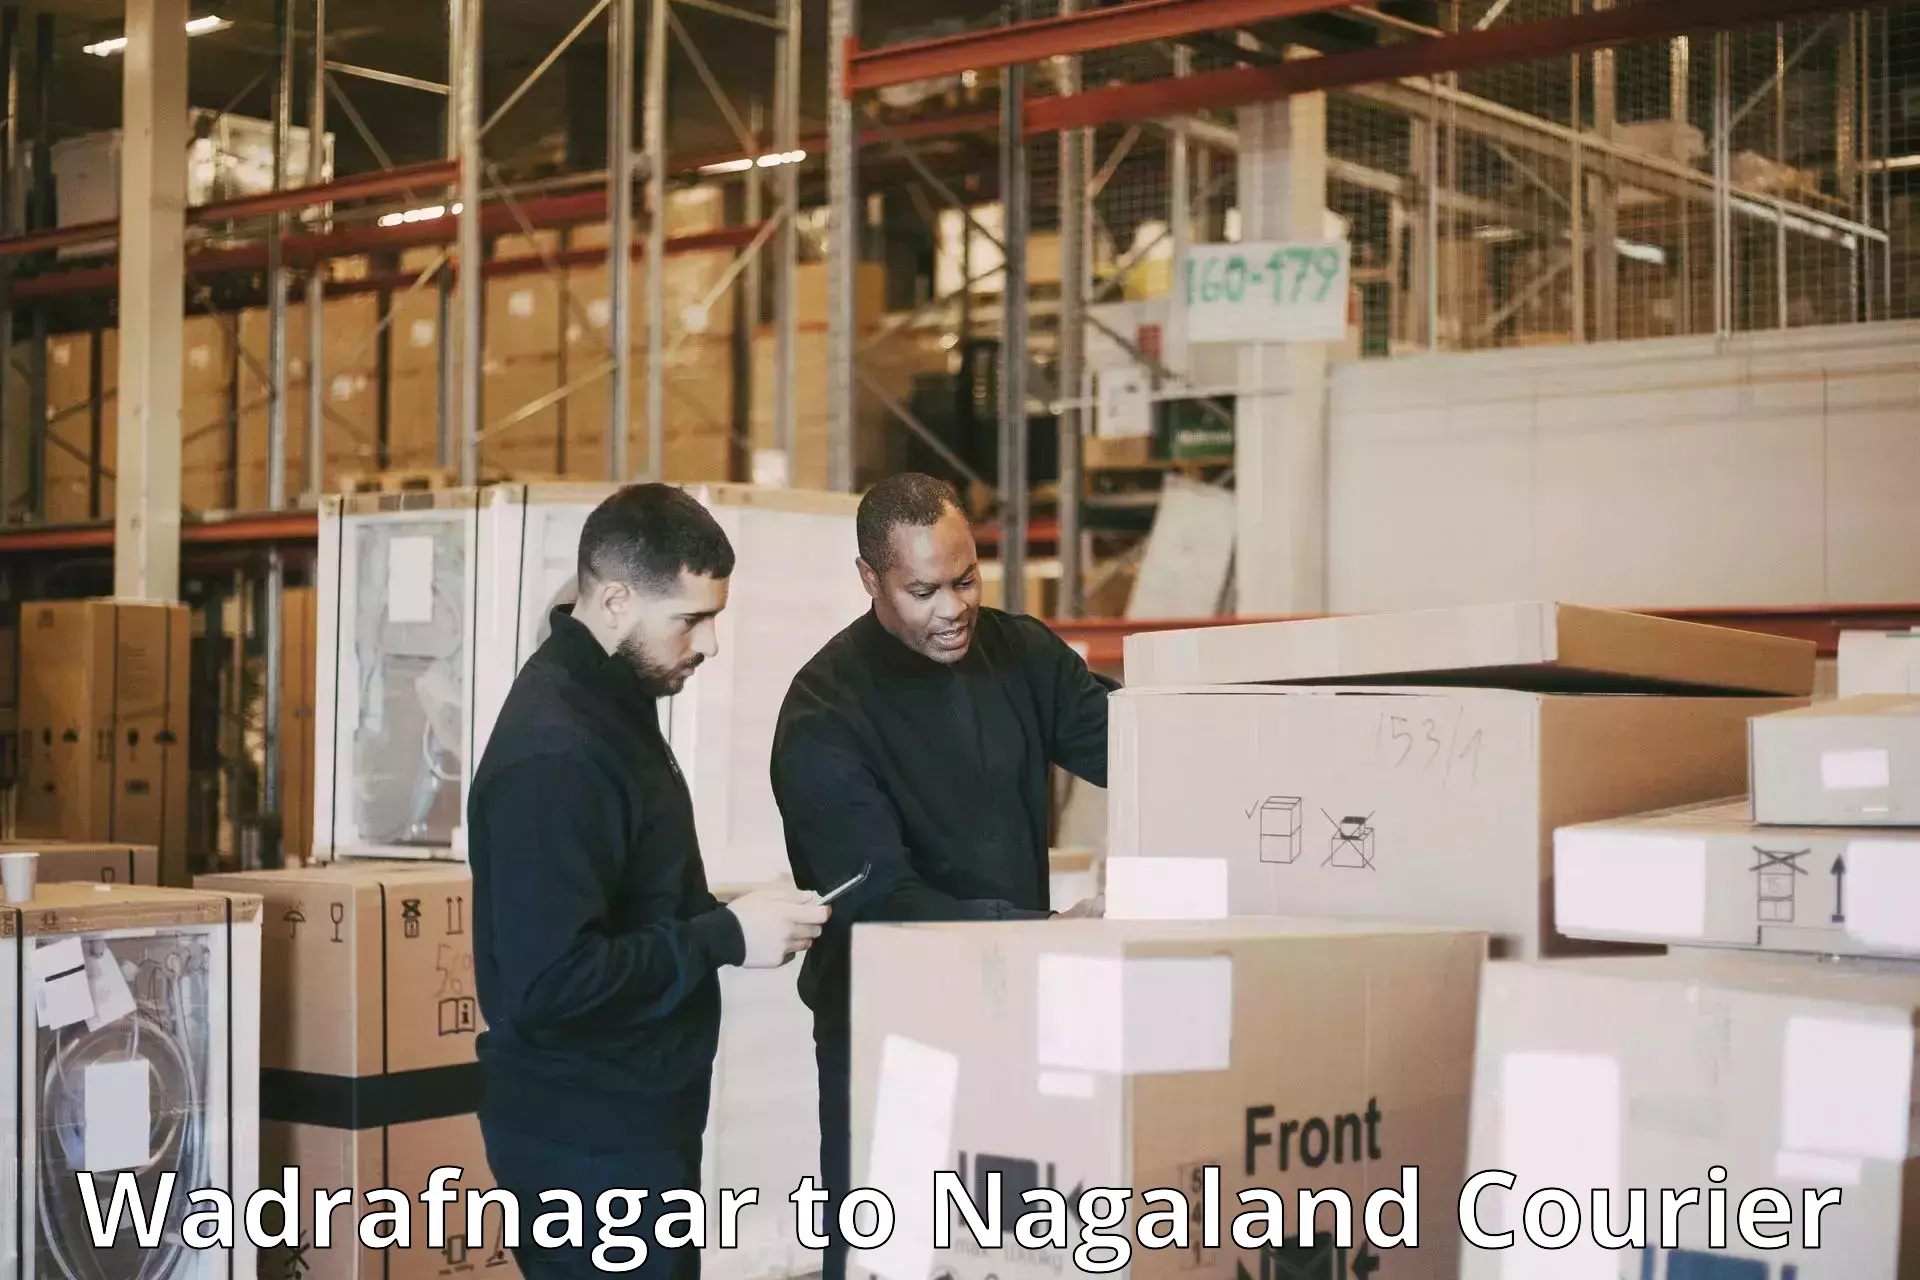 Business logistics support Wadrafnagar to Nagaland